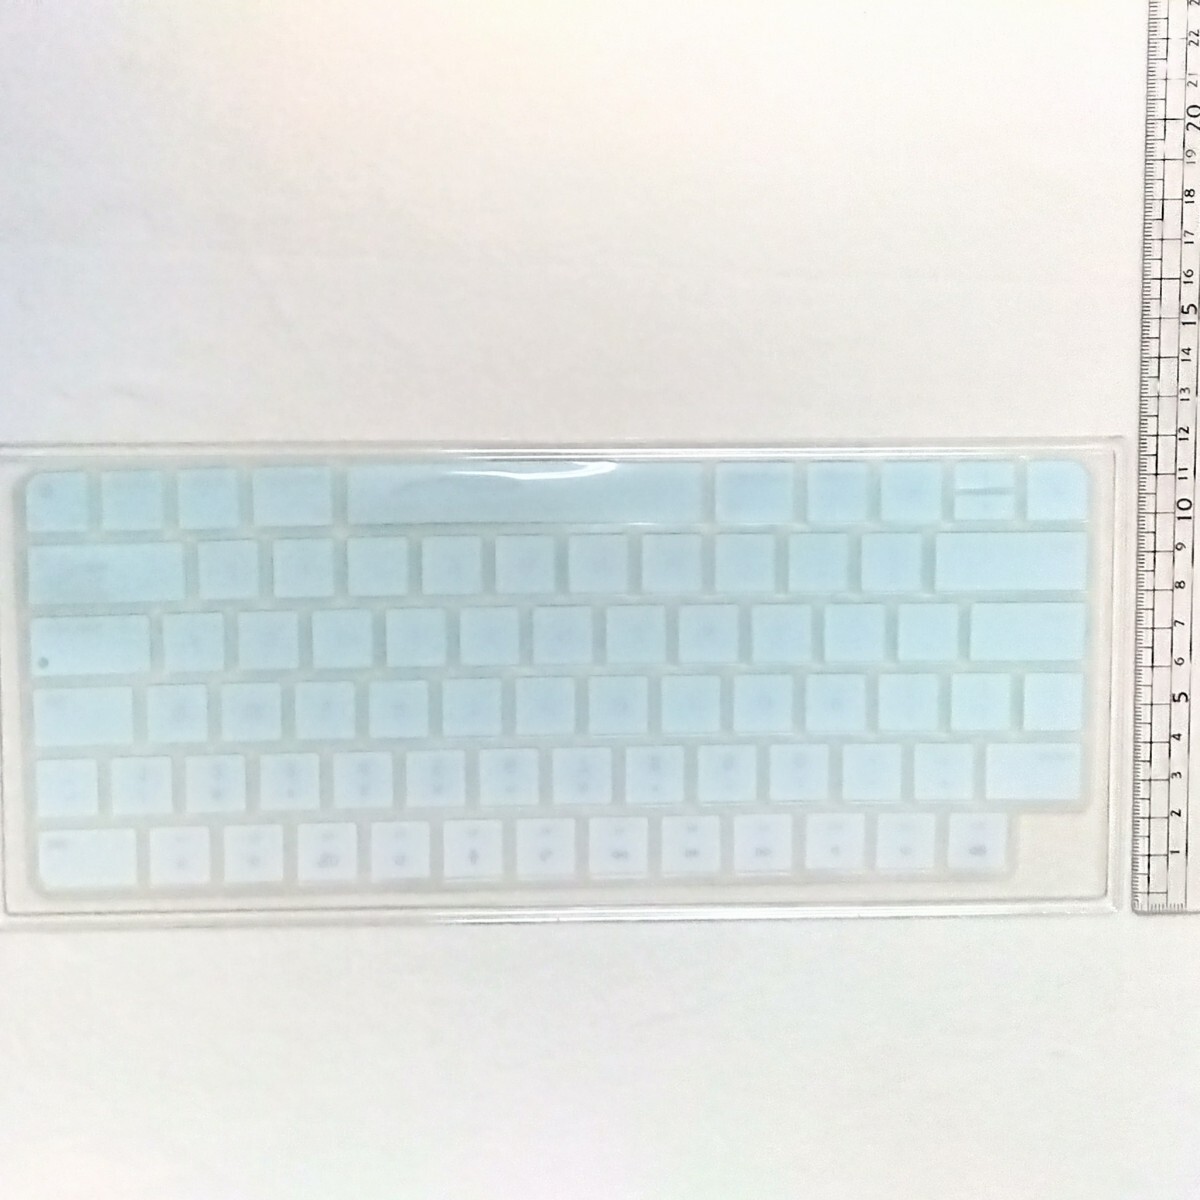 マジックキーボード US 英語 キーボードカバー MacBook Pro/MacBook Air キーボードカバー キーボードフィルム バックライト 27.8×11.2cmの画像4